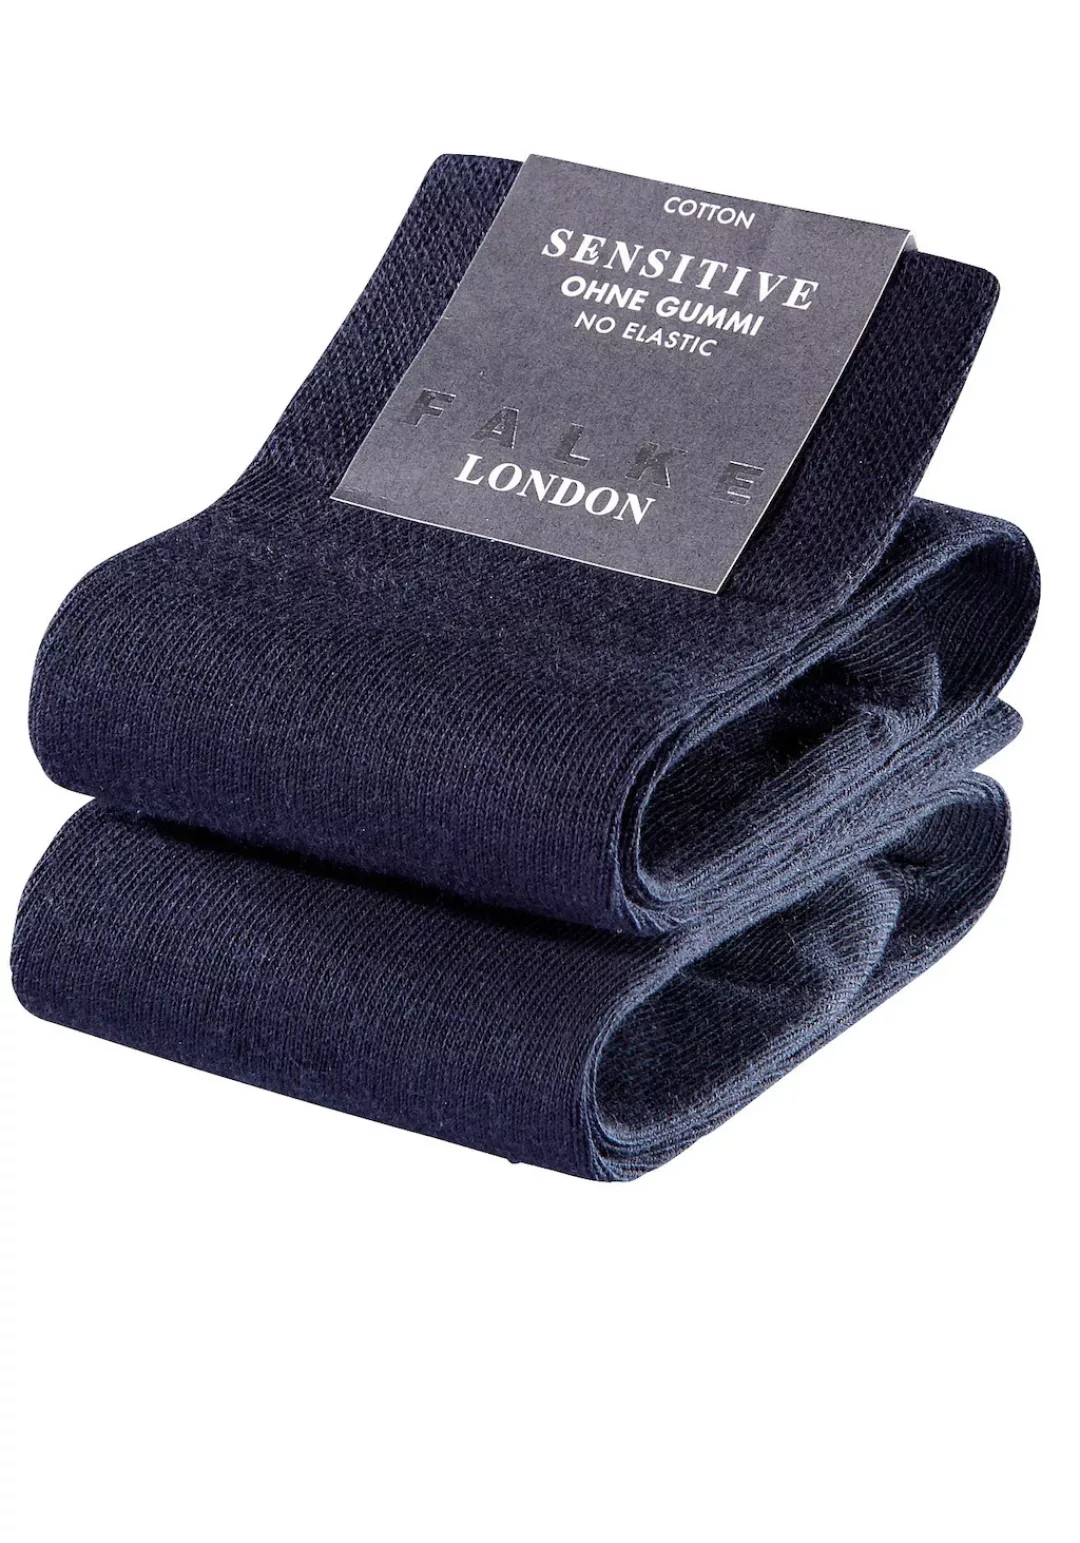 FALKE Socken "Sensitive London", (2 Paar) günstig online kaufen